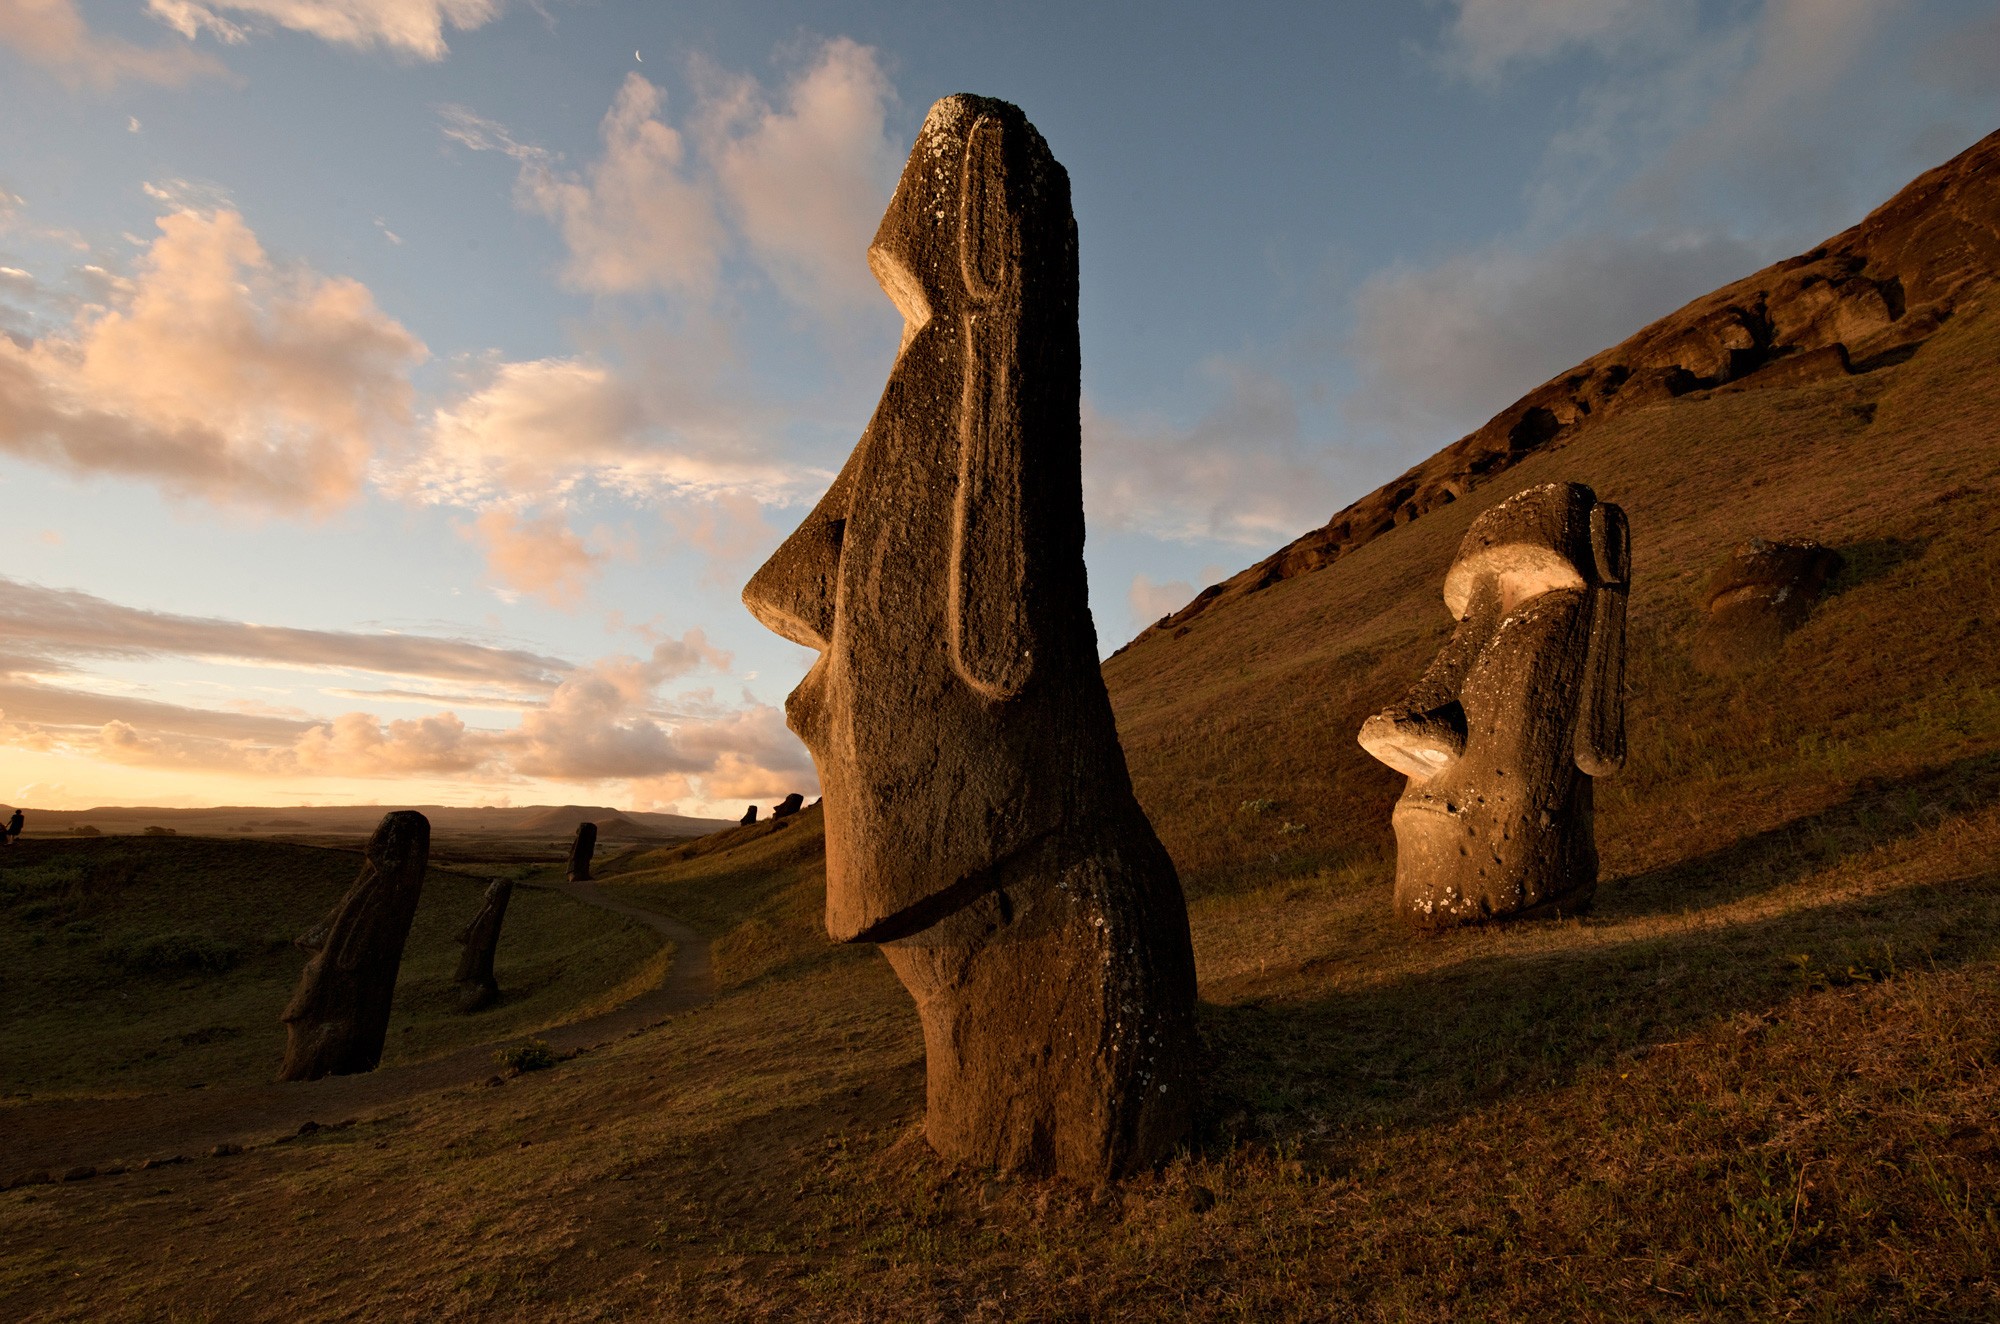 Земли которые не разгаданы. Каменные статуи Моаи остров Пасхи Чили. Моаи на острове Пасхи. Национальный парк Рапануи (остров Пасхи). Моаи (статуи острова Пасхи), Чили.